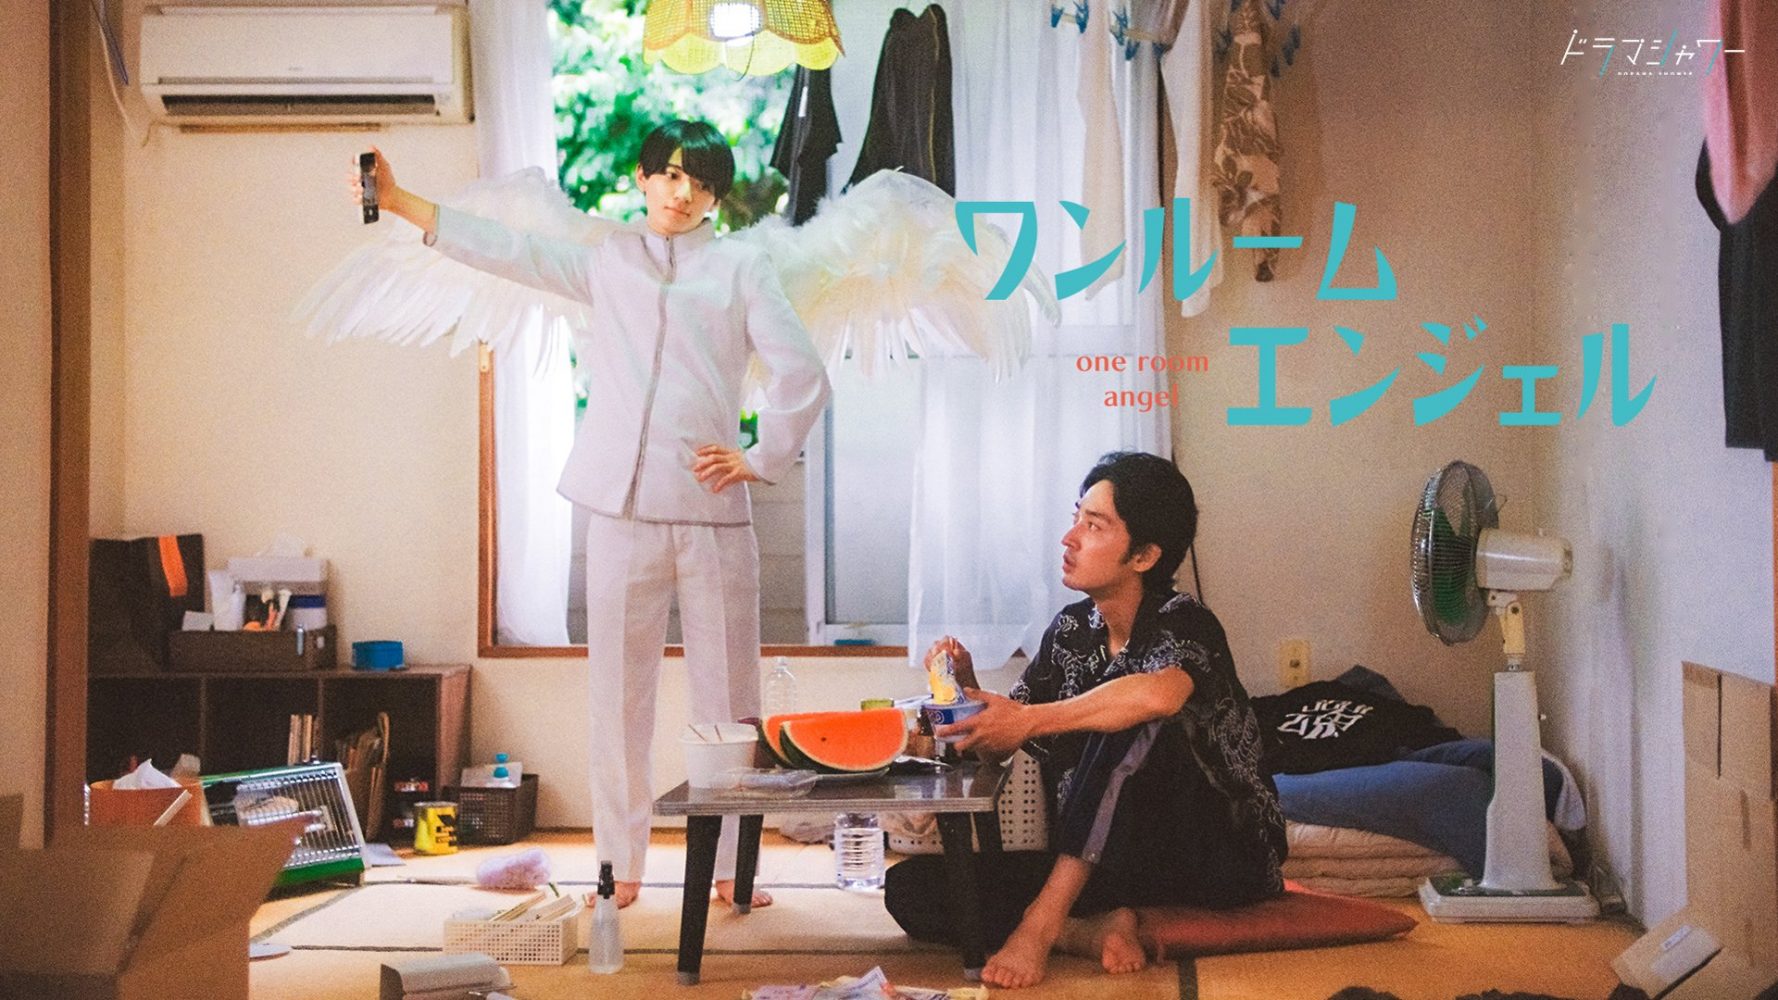 Phim đam mỹ Nhật Bản hay: Khi tôi và thiên thần chung phòng – One room angel (2023)